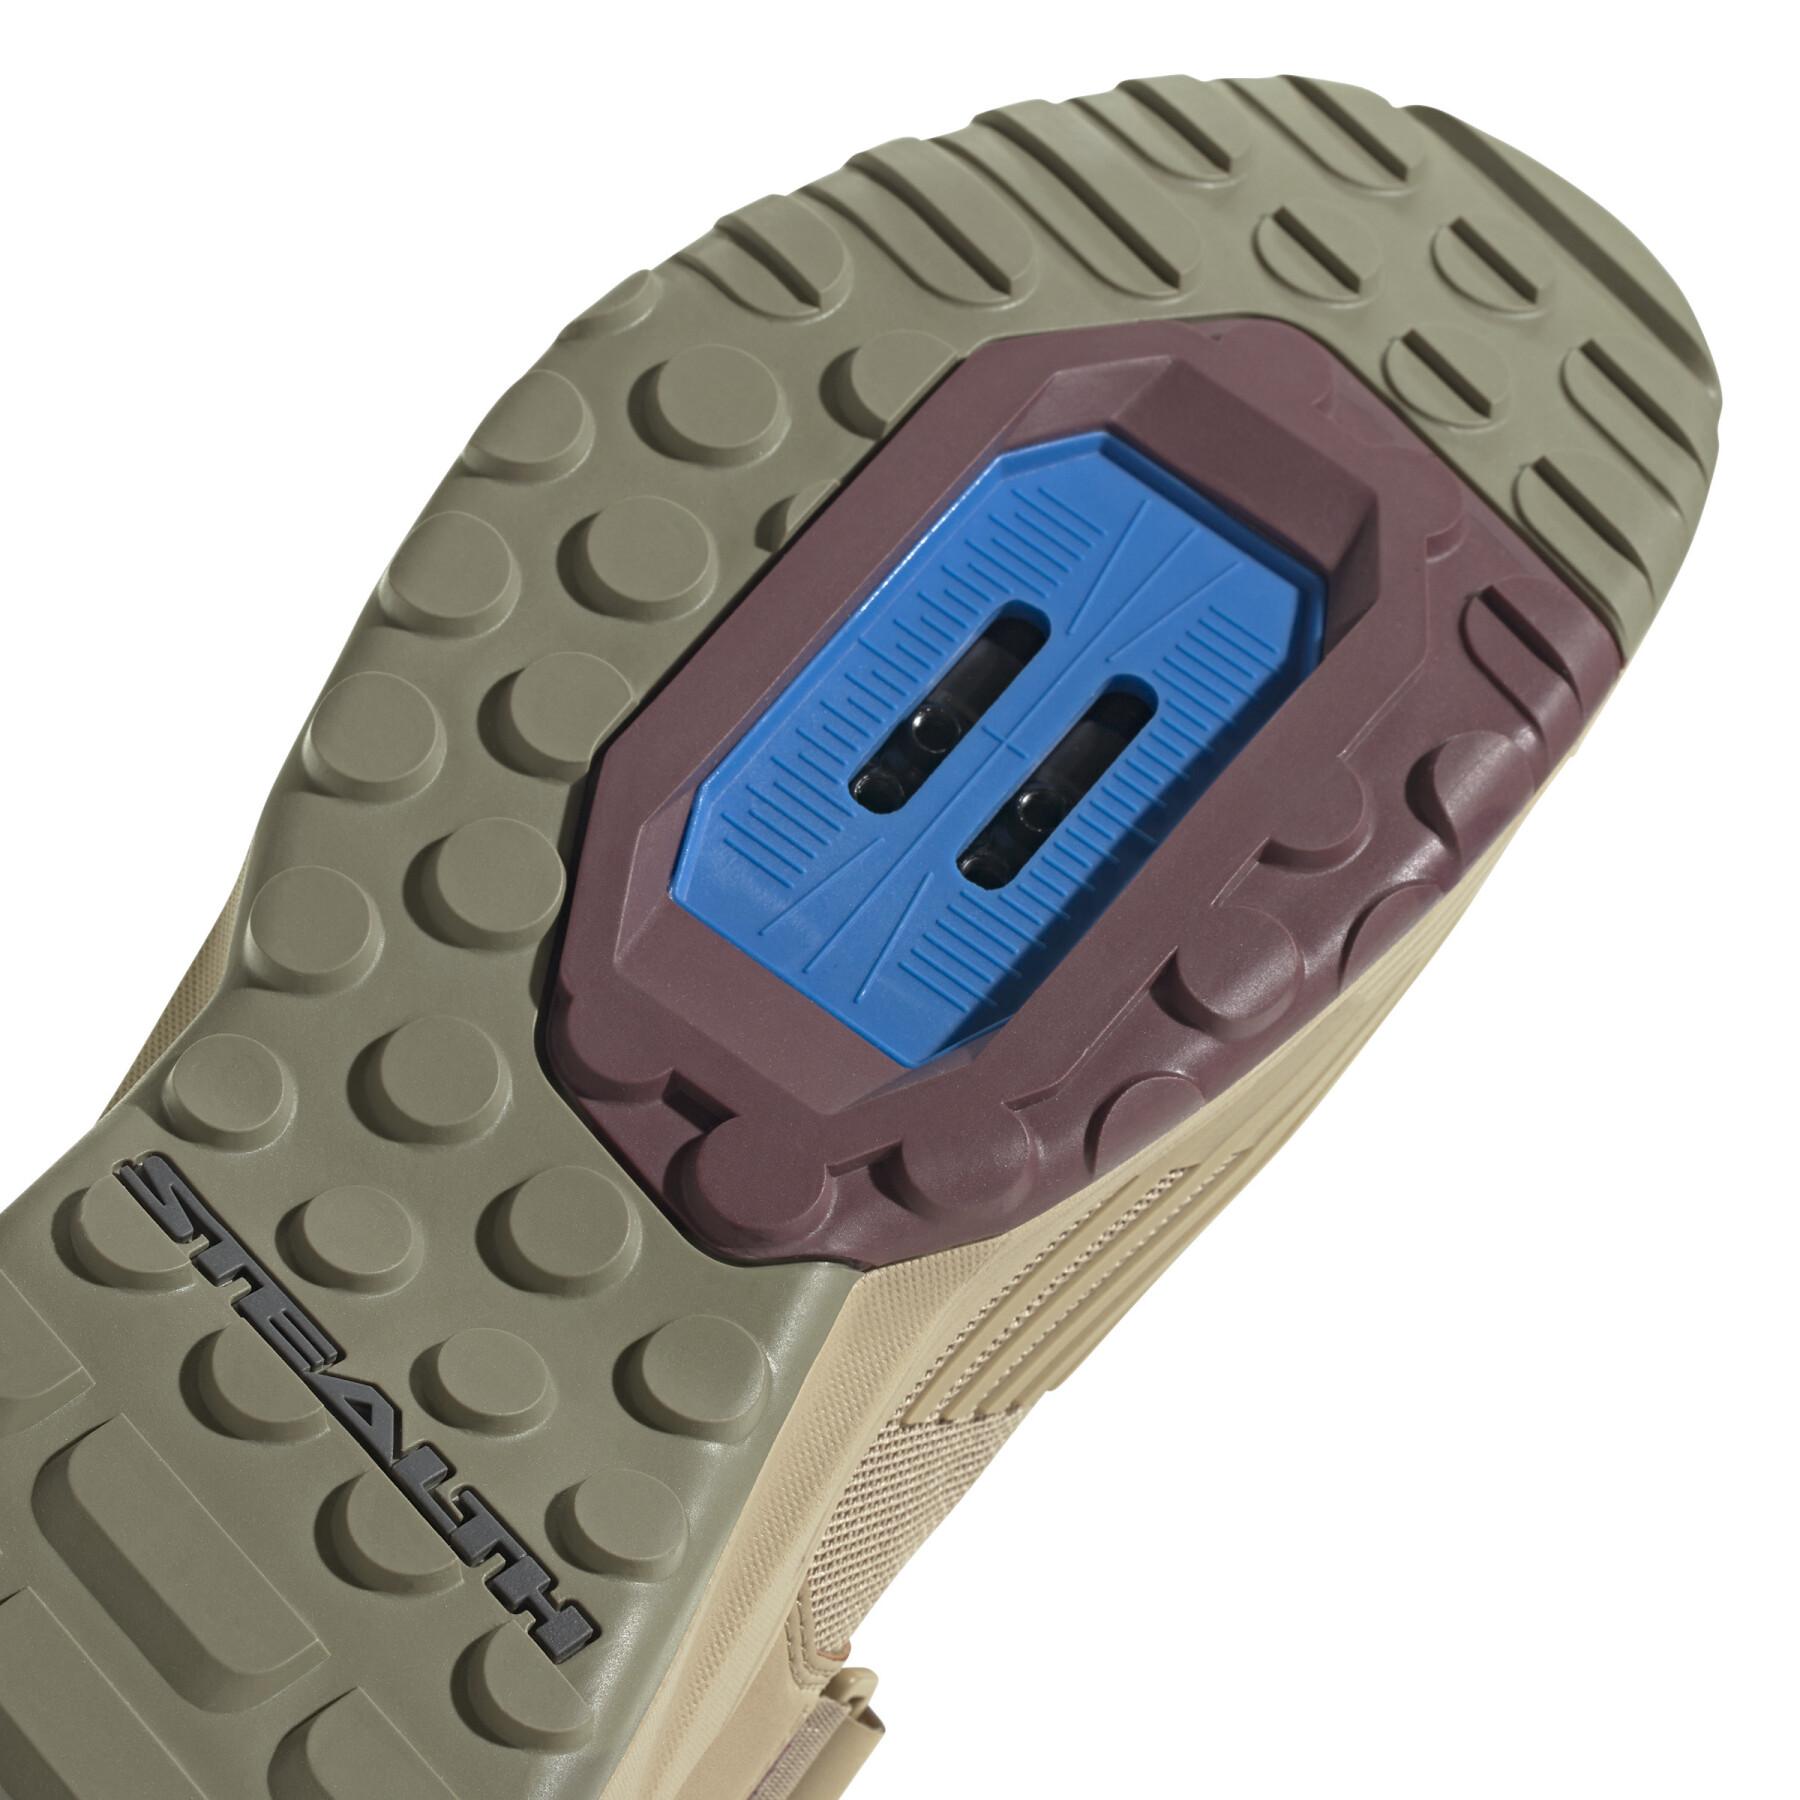 Chaussures VTT adidas Five Ten Trailcross Clip-In